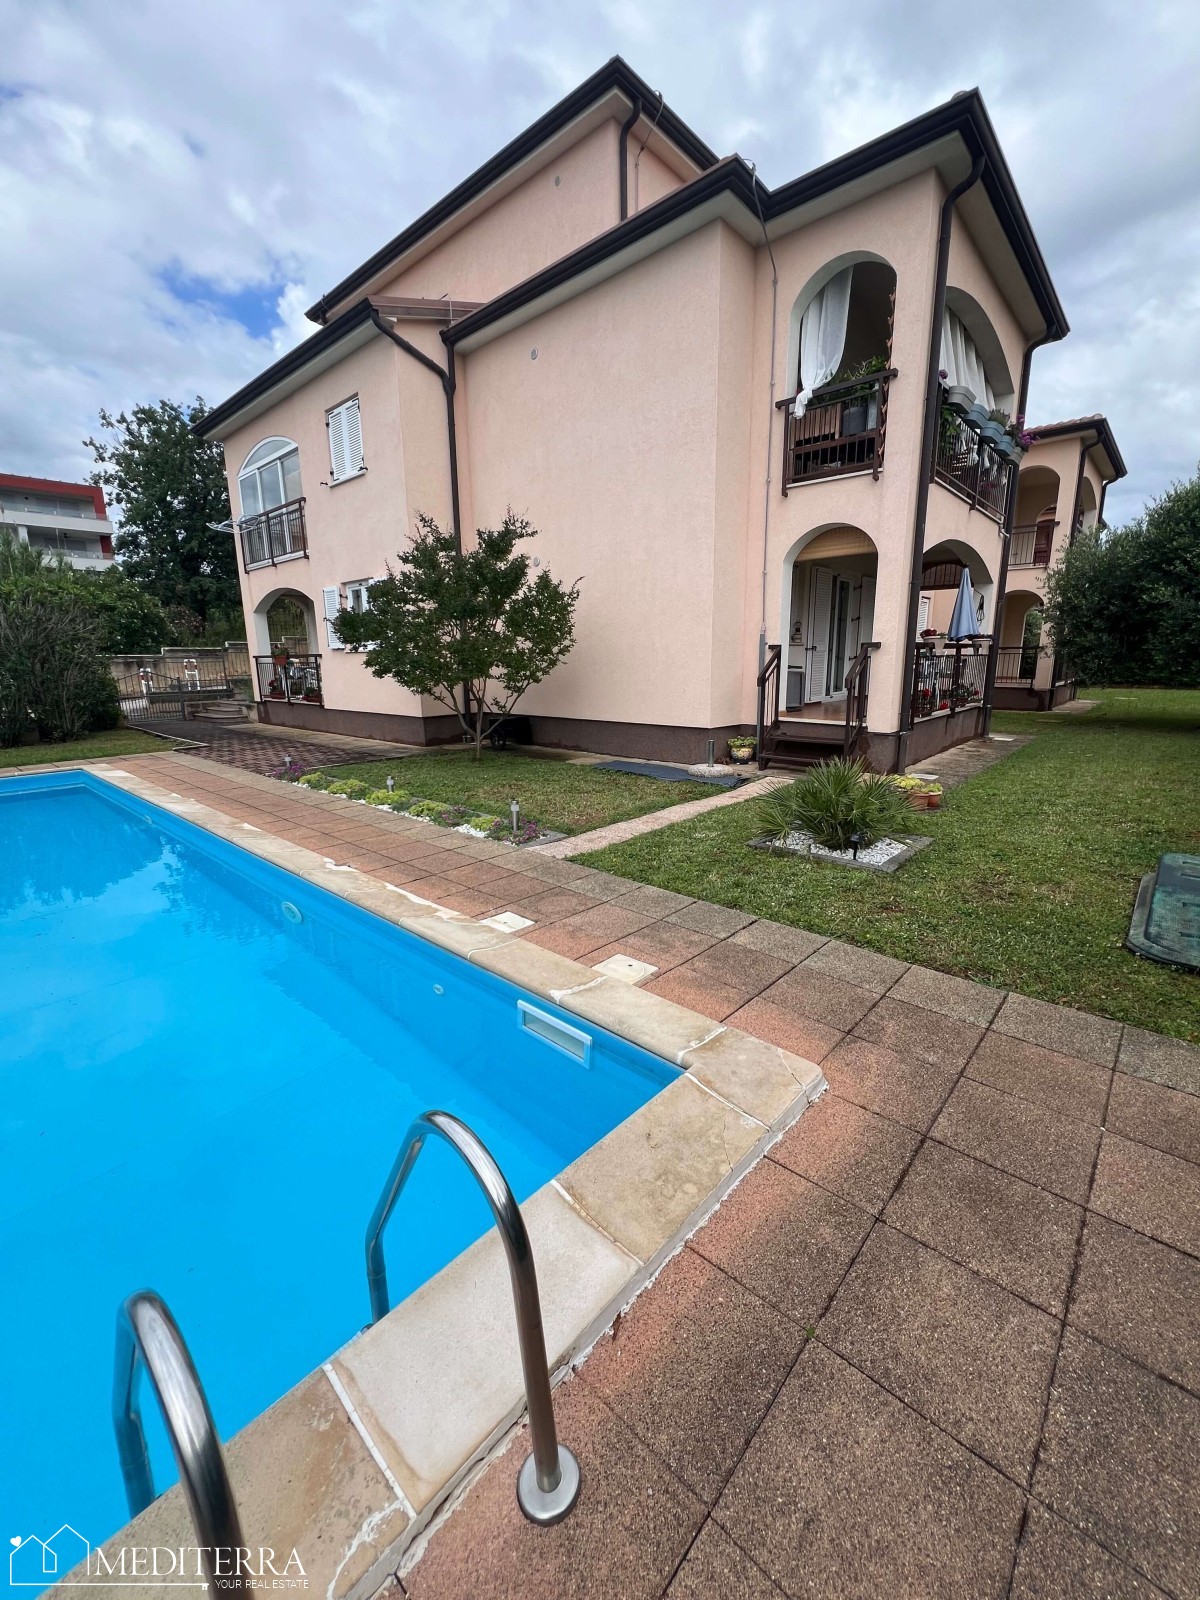 Appartamento al piano terra con piscina in comune in un'ottima posizione, Cittanova, Istria